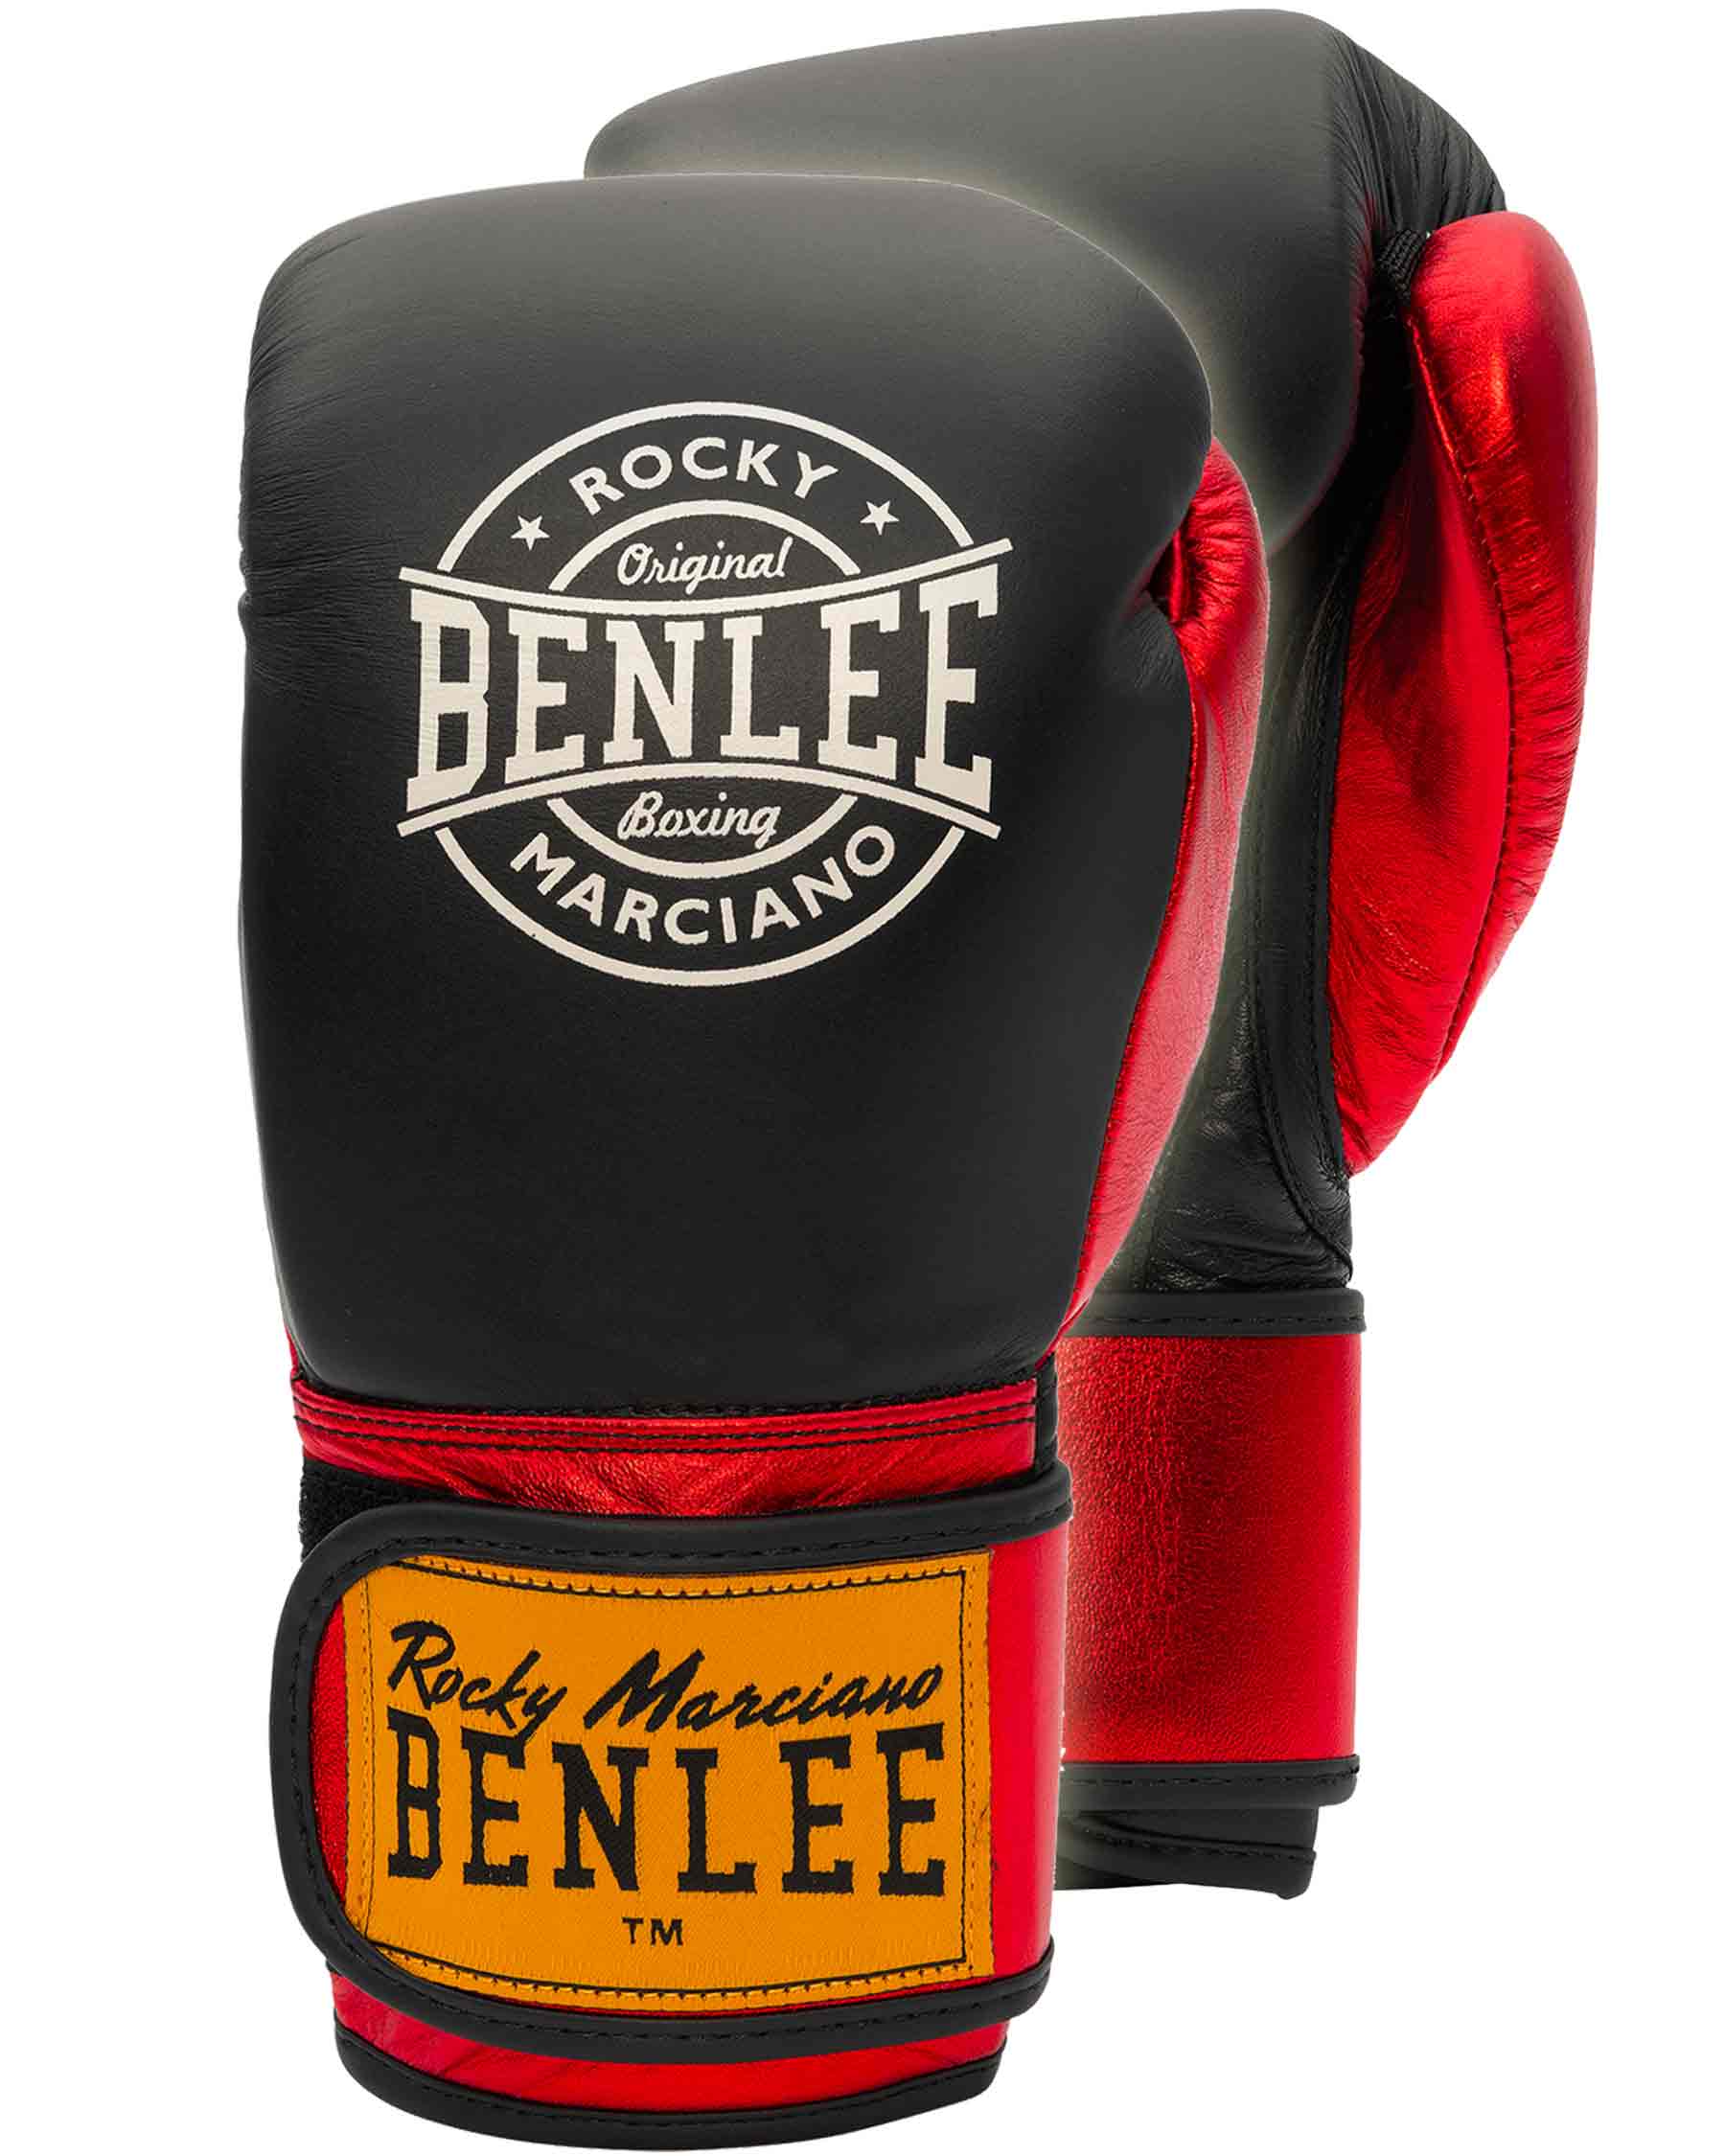 الوهم الكبير كره ارضيه غواصة أغنيس غراي مايكل أنجلو المسؤولون benlee boxing  - elkoinc.com